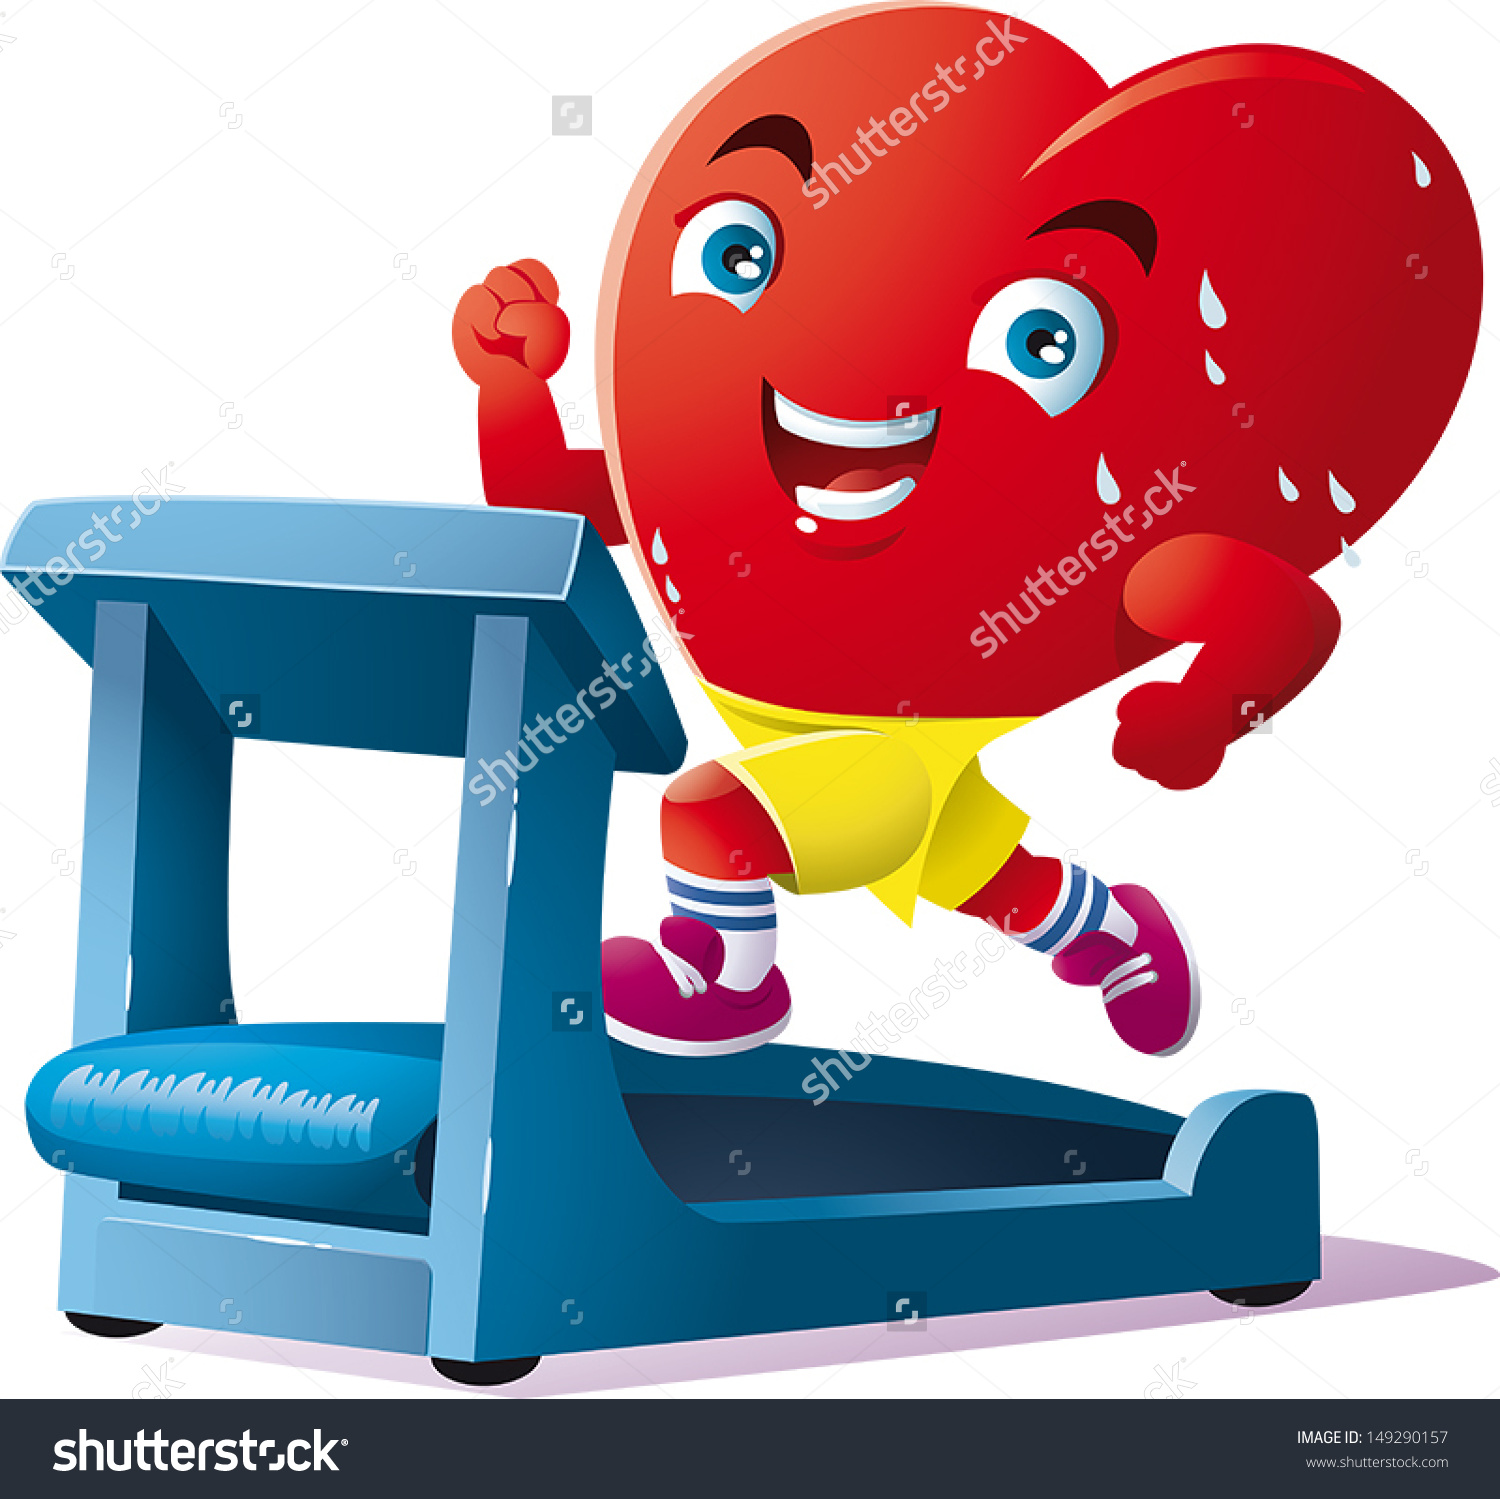 Animated Heart Run On Treadmill Stock Vector 149290157.